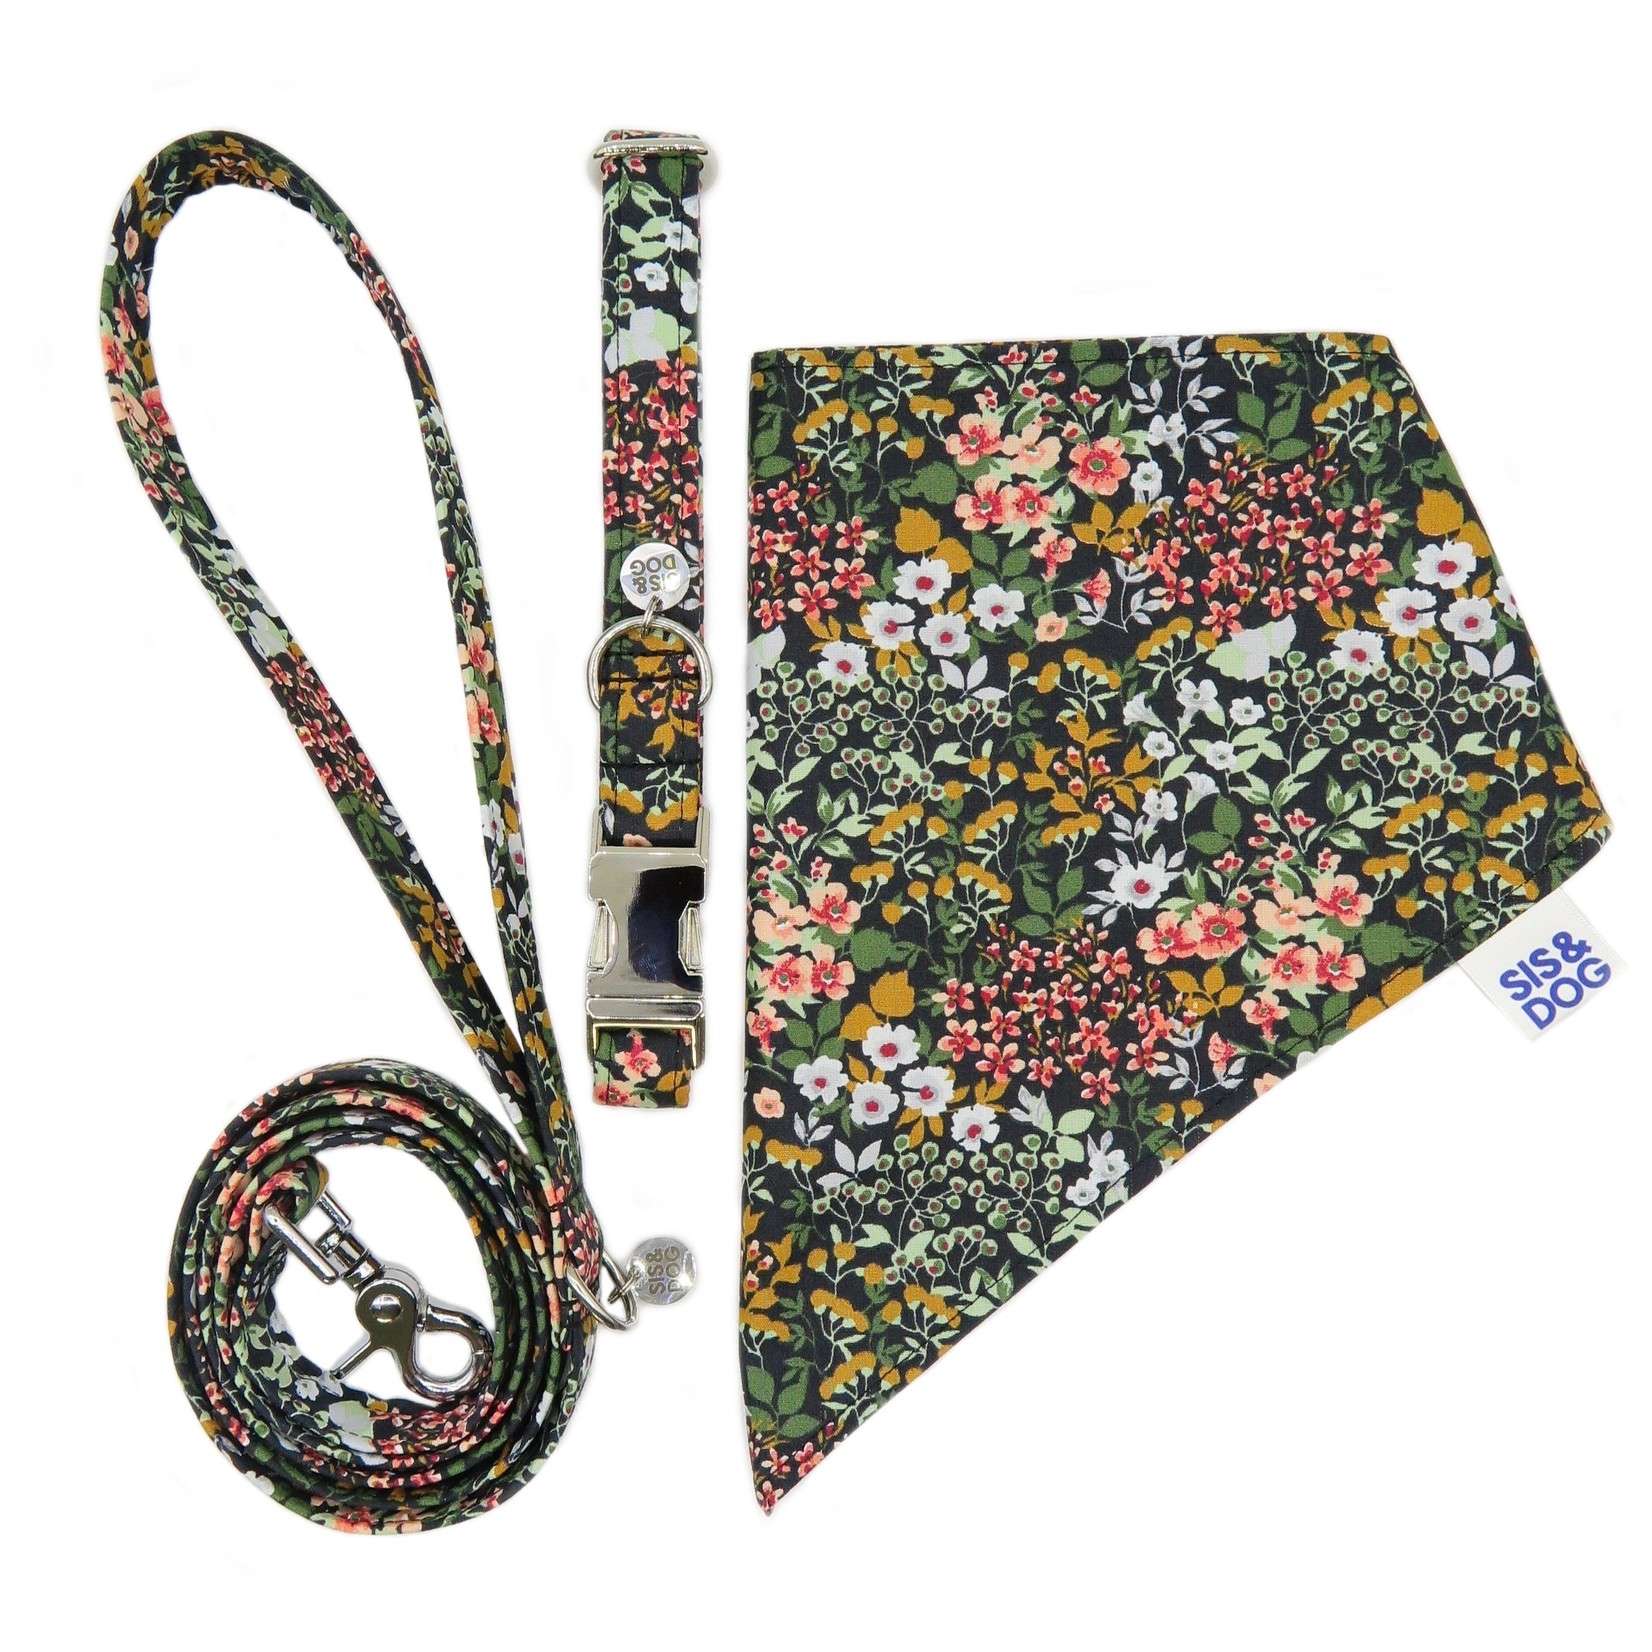 Secret garden bandana set